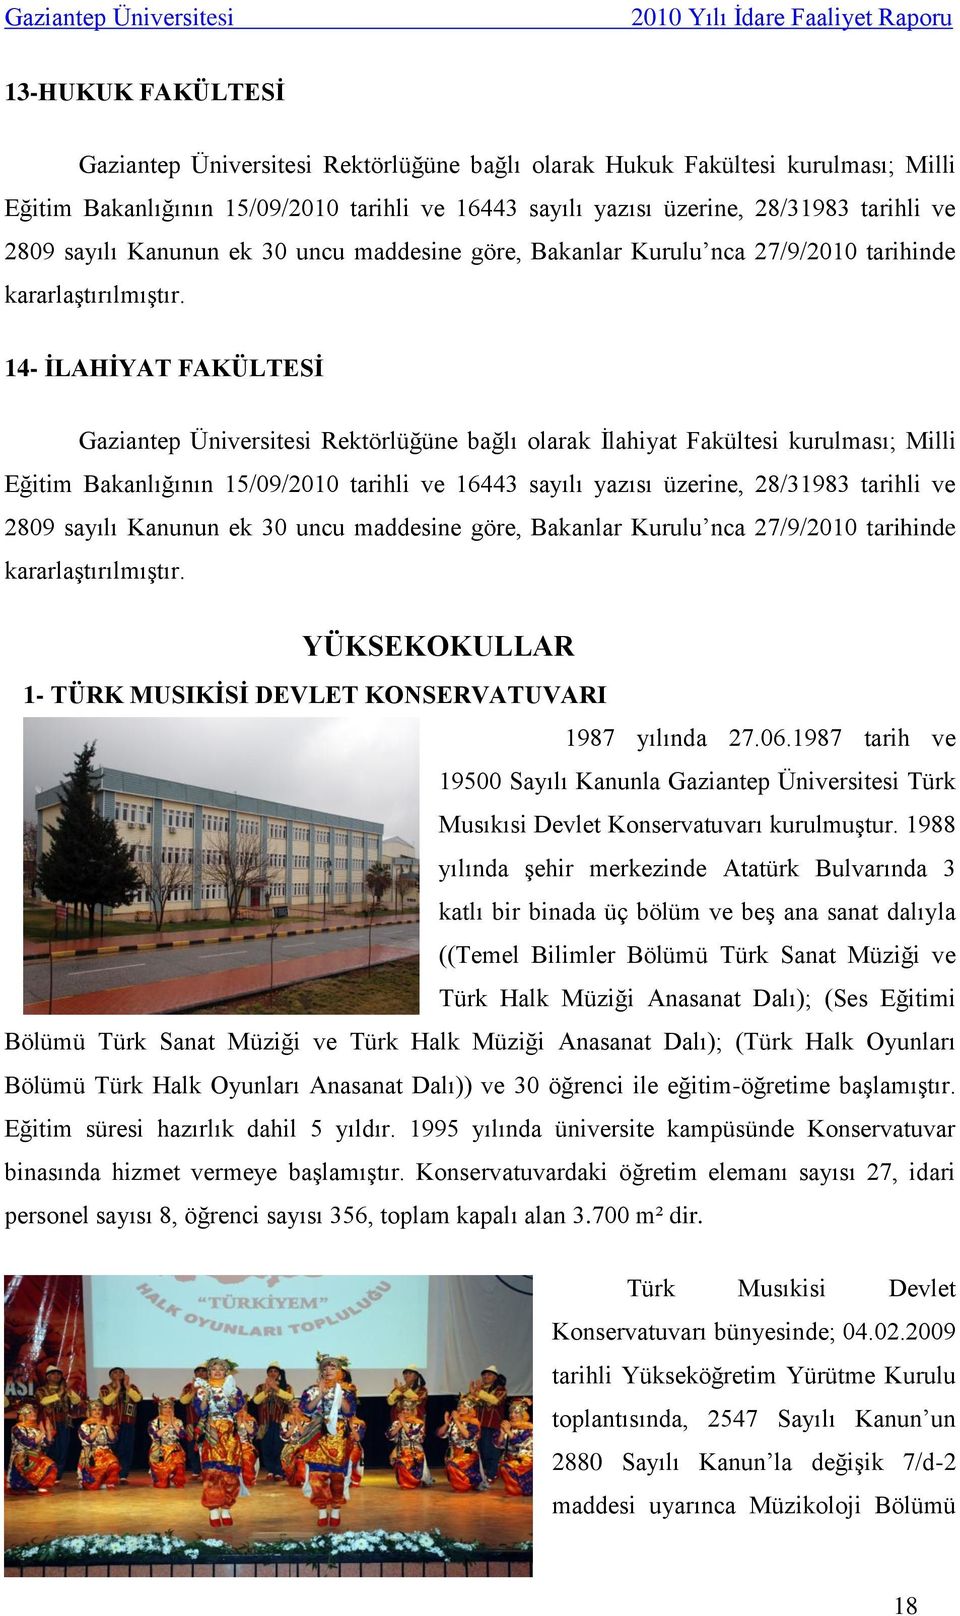 14- İLAHİYAT FAKÜLTESİ Gaziantep Üniversitesi Rektörlüğüne bağlı olarak İlahiyat Fakültesi kurulması; Milli Eğitim Bakanlığının 15/09/2010 tarihli ve 16443 sayılı yazısı üzerine, 28/31983 tarihli ve